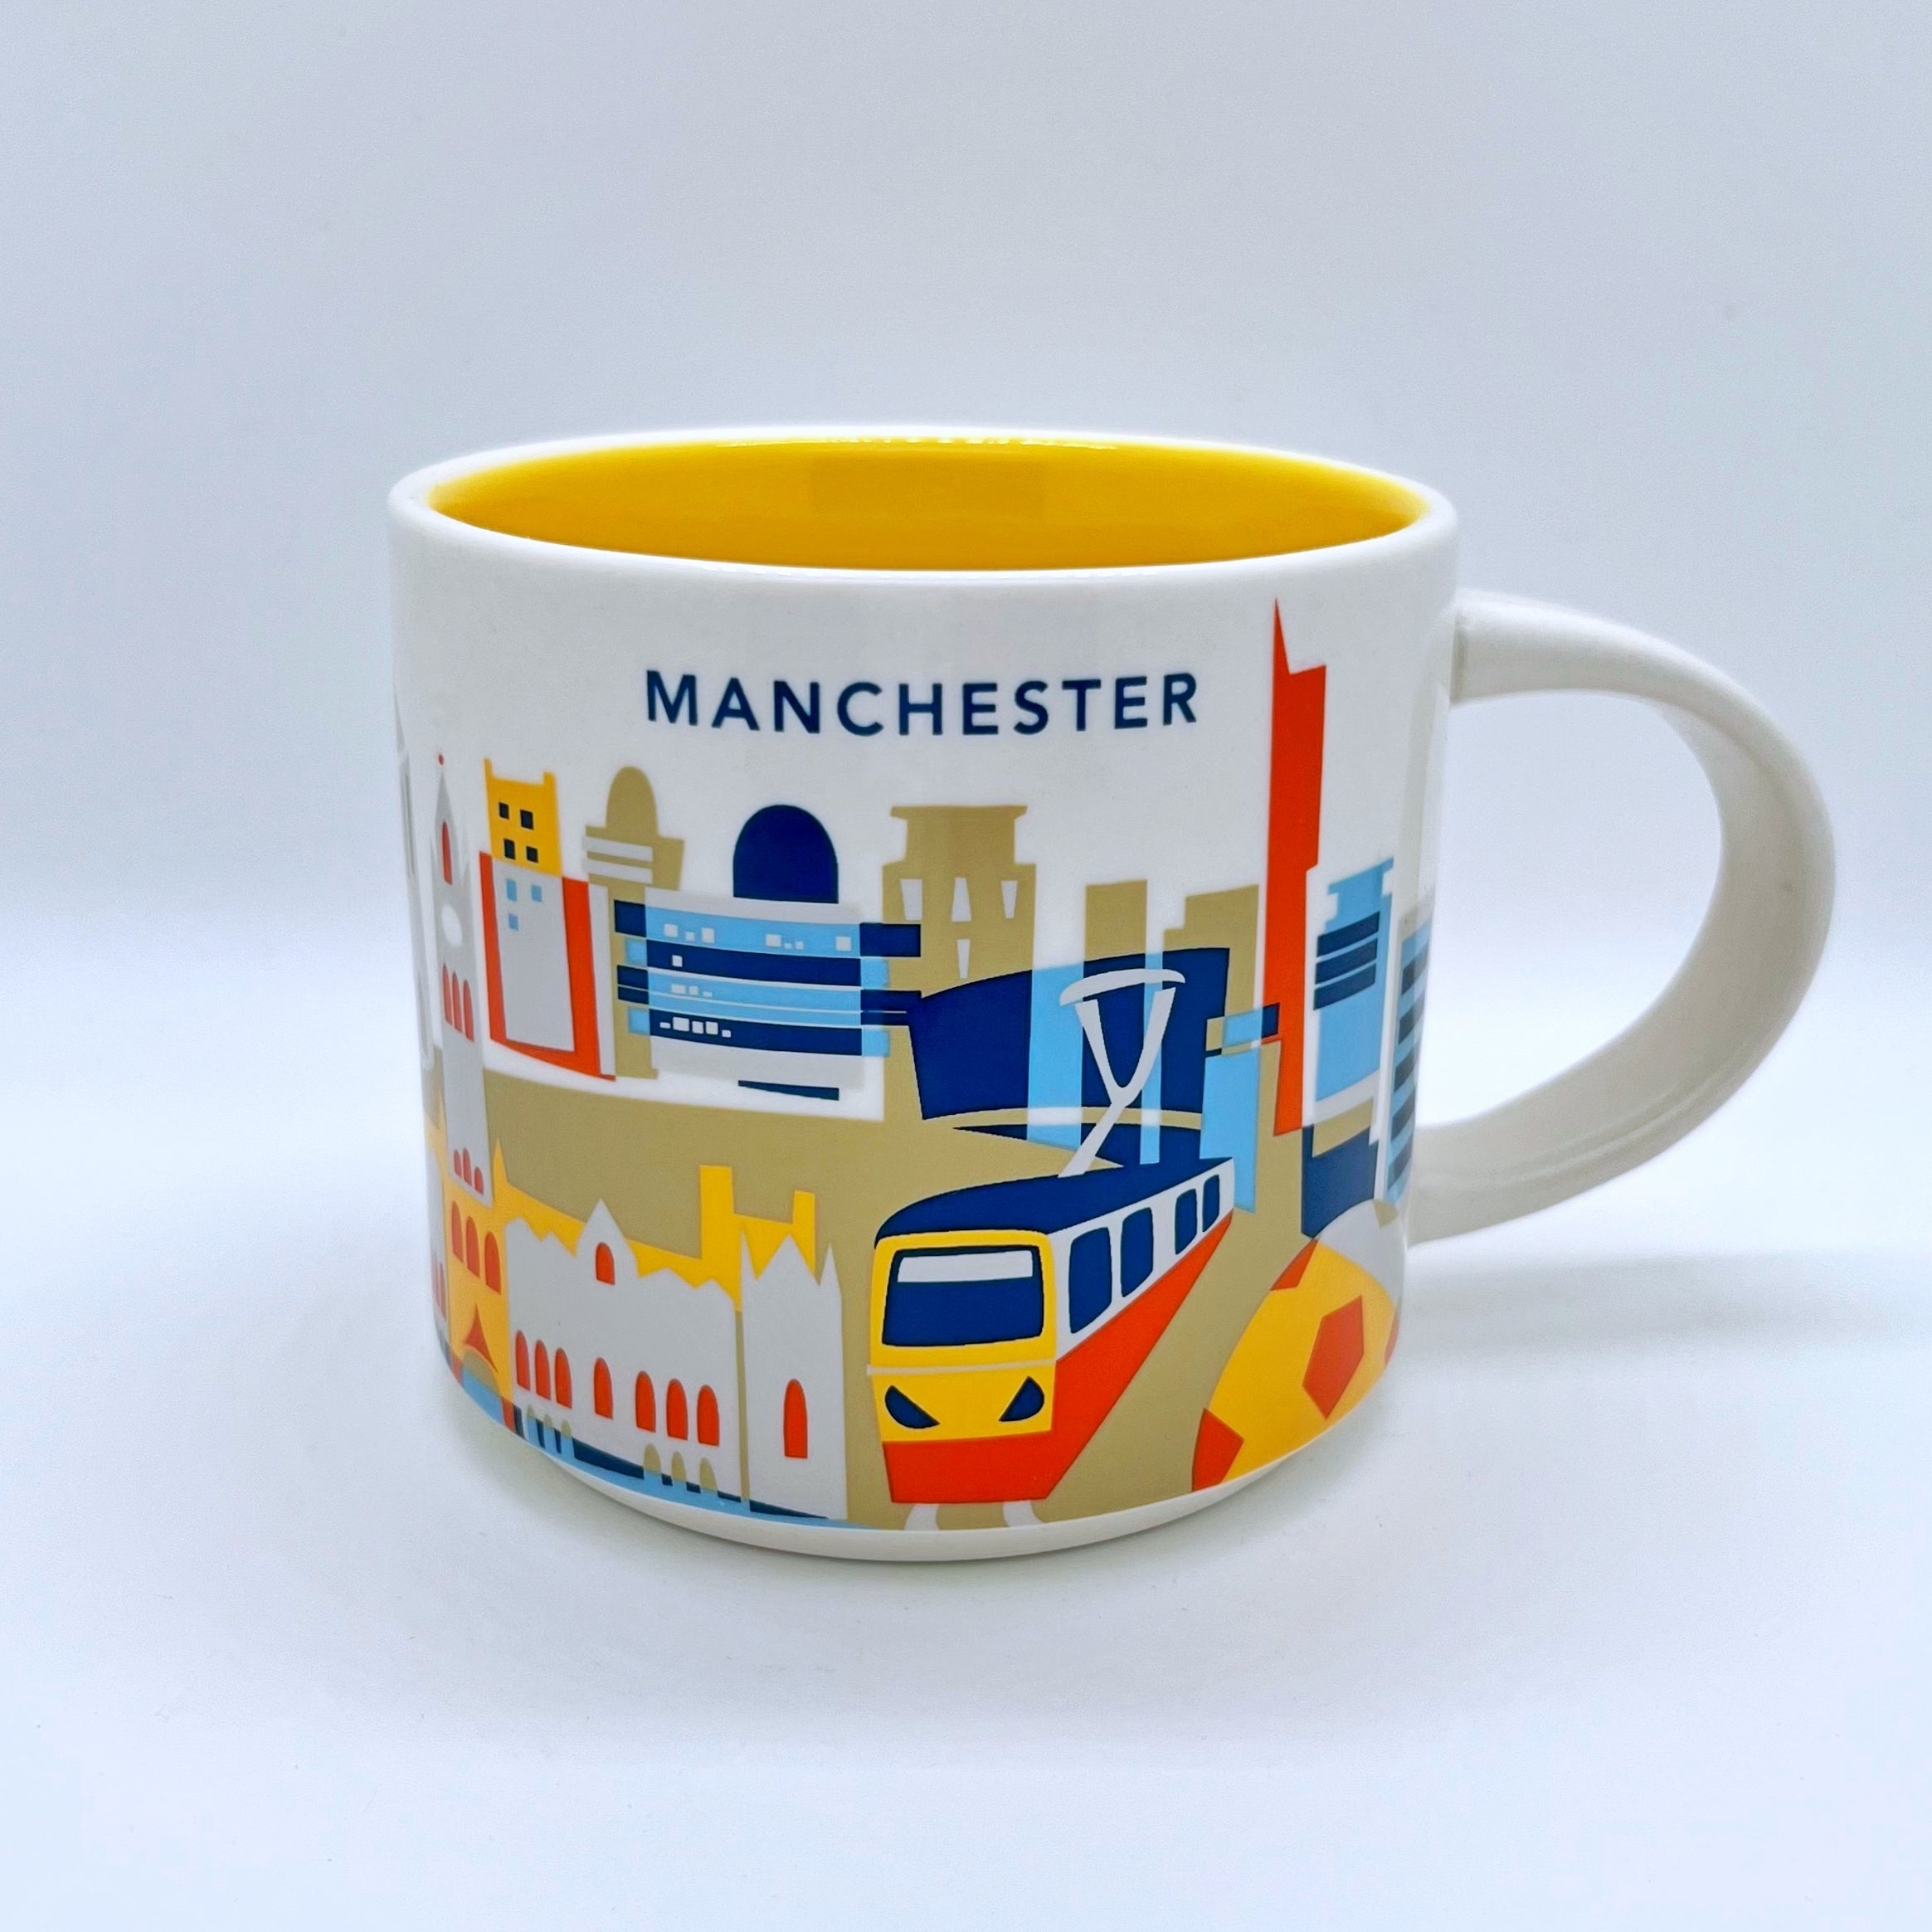 Kaffee Tee und Cappuccino Tasse von Starbucks mit gemalten Bildern aus der Stadt Manchester